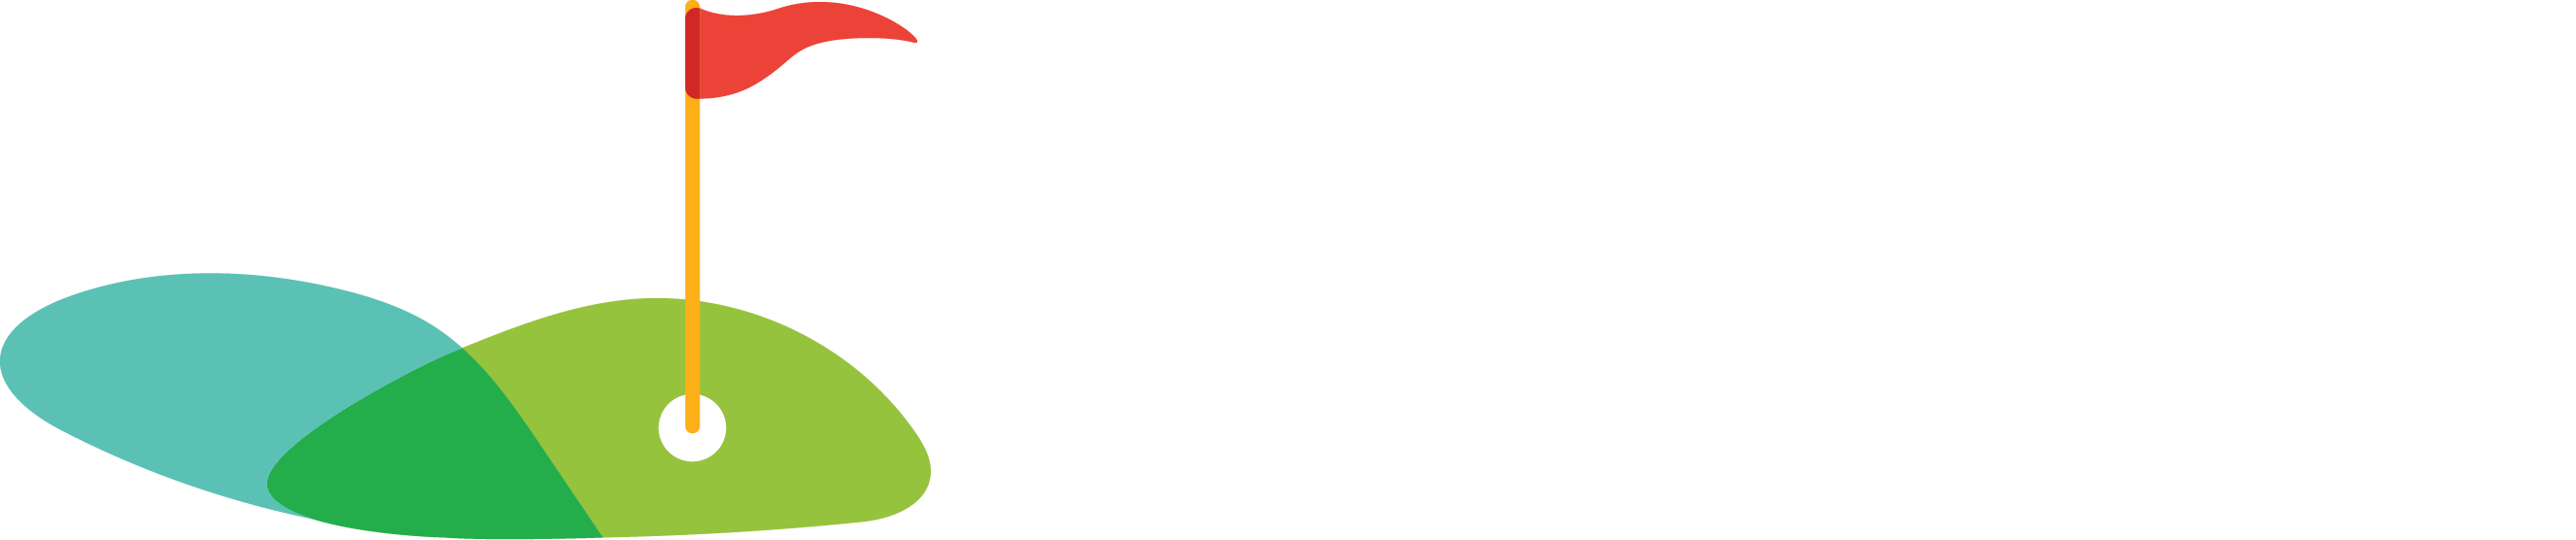 Carramar Golf Course logo